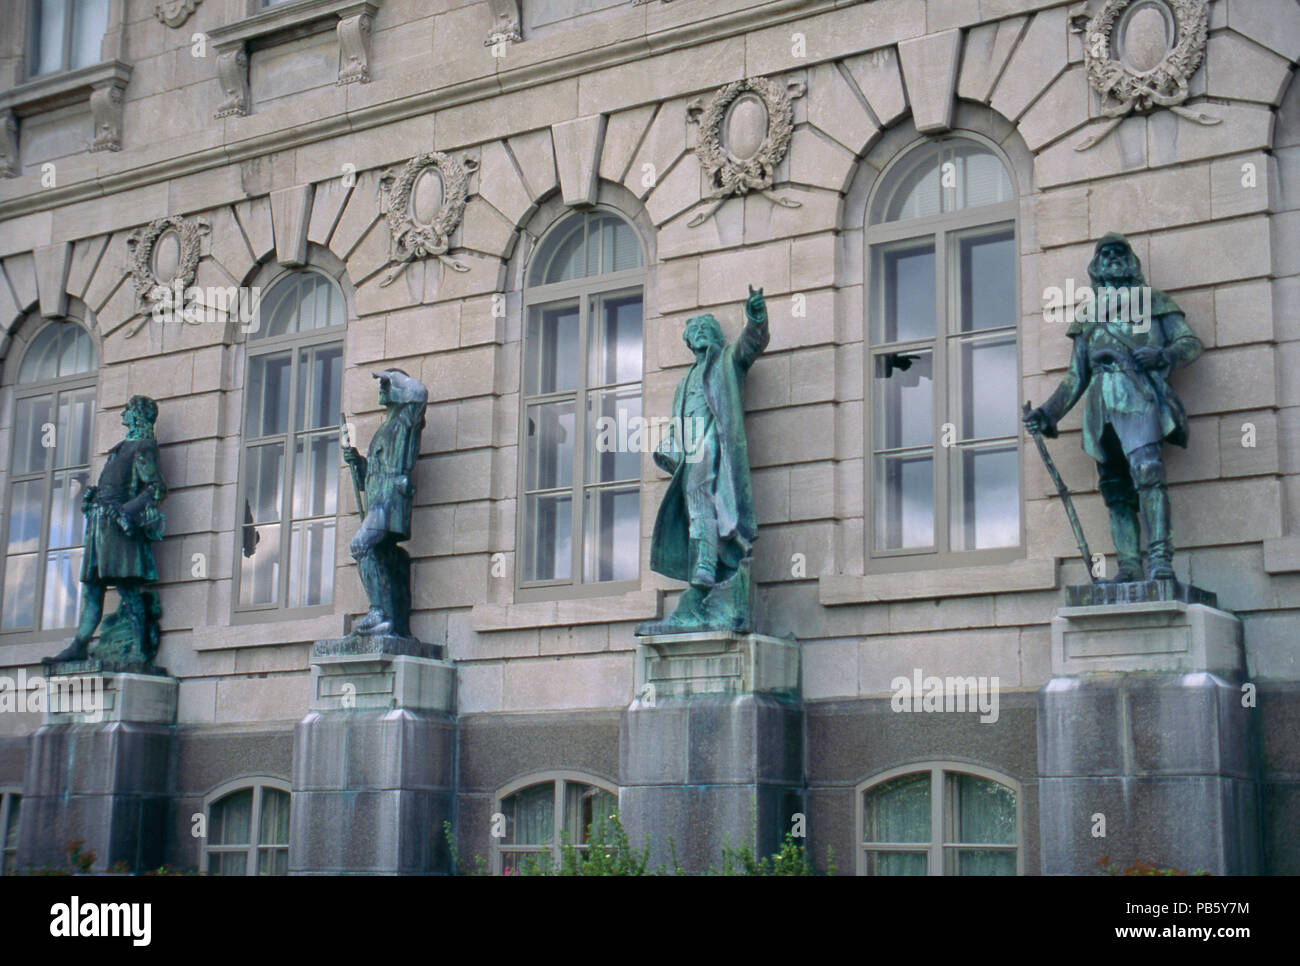 D'Iberville, La Vérendrye, Marquette et Joliet, statues, Hôtel du Parlement, Québec, Canada. Photographie Banque D'Images